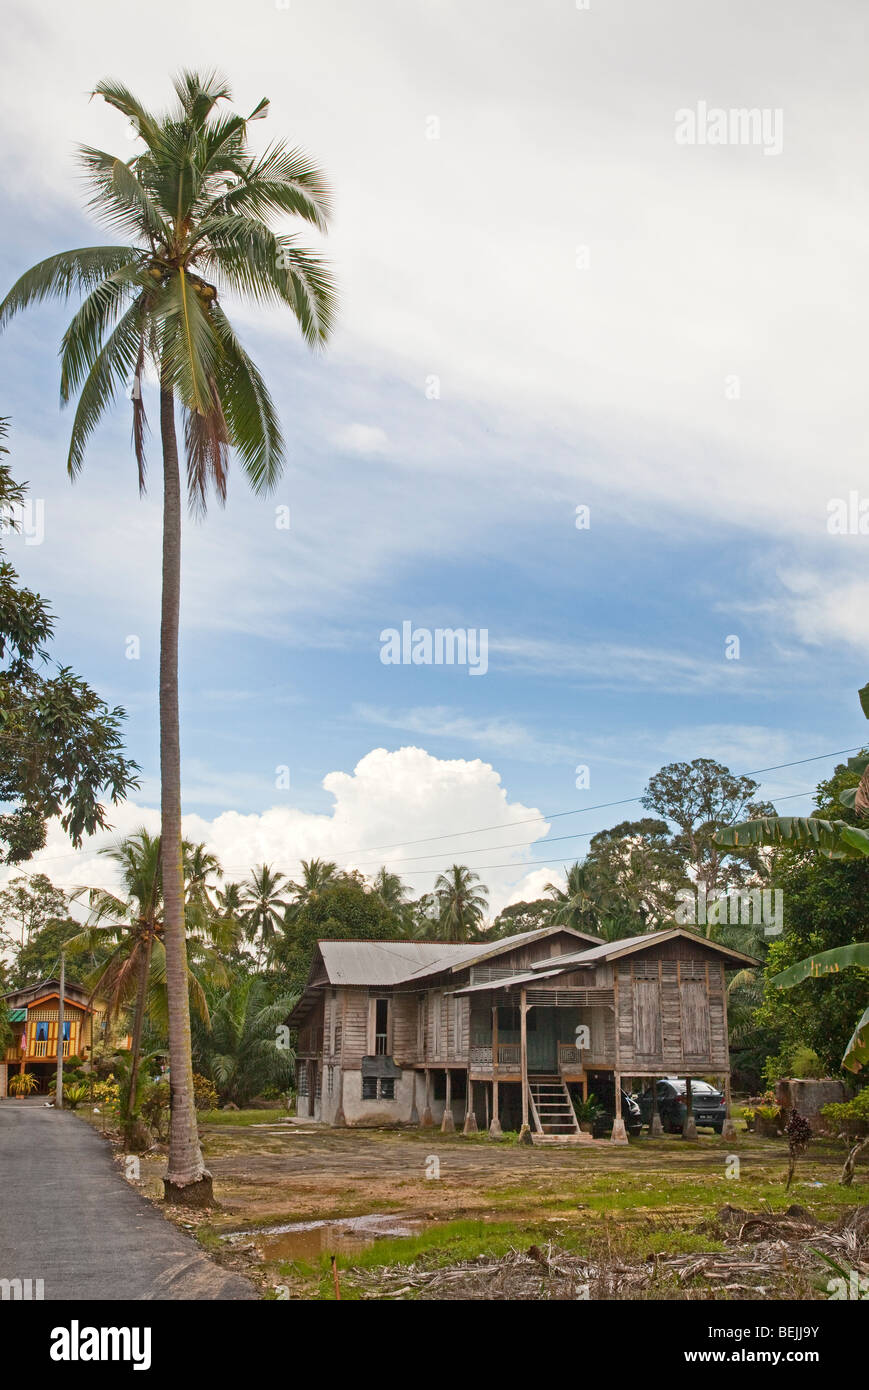 Malais Kampung typique en bois maison sur pilotis, la Malaisie Banque D'Images